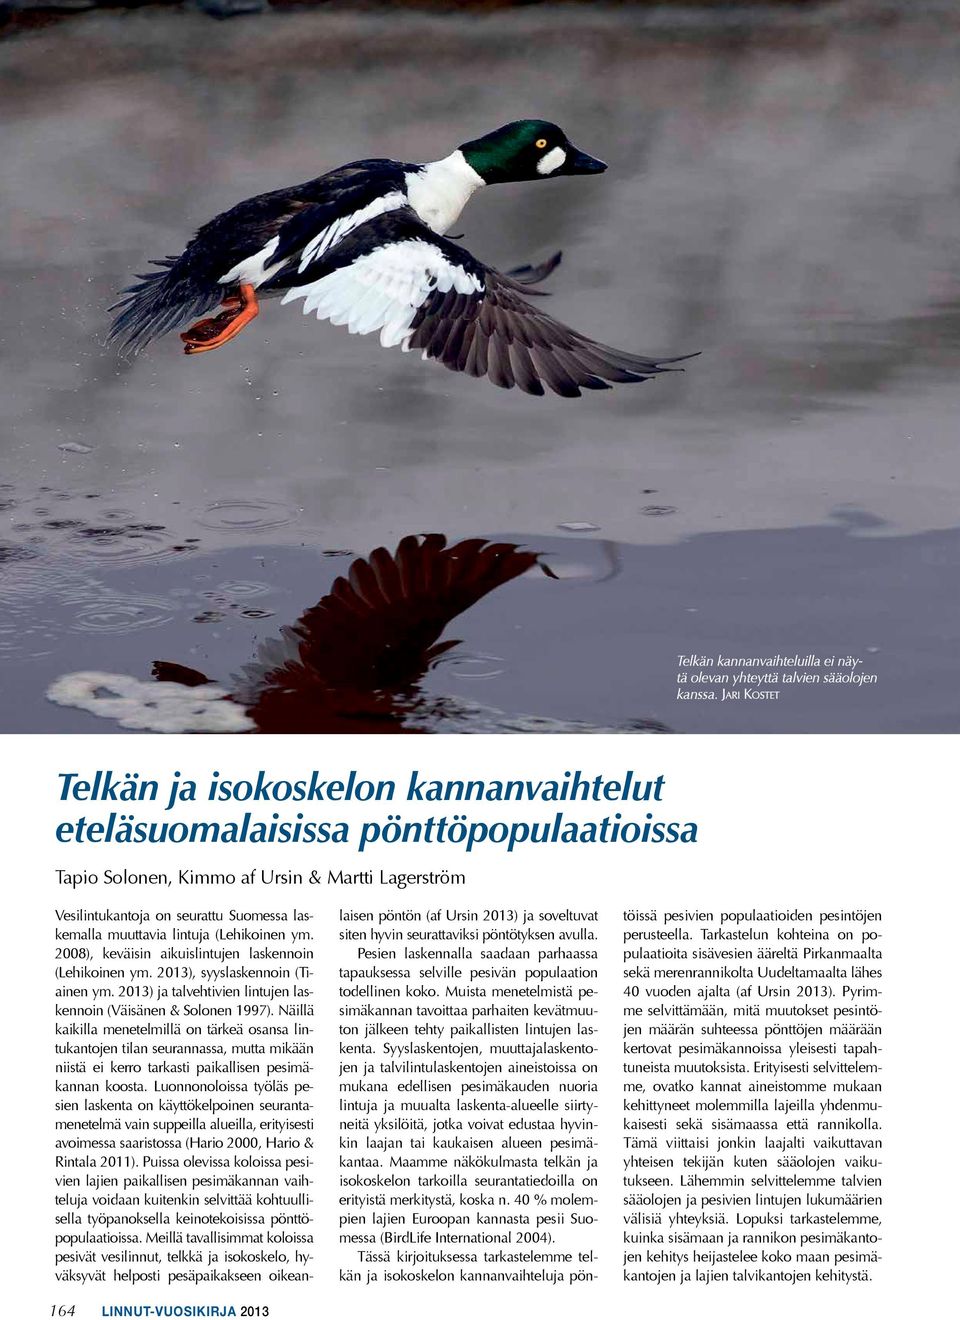 lintuja (Lehikoinen ym. 2008), keväisin aikuislintujen laskennoin (Lehikoinen ym. 2013), syyslaskennoin (Tiainen ym. 2013) ja talvehtivien lintujen laskennoin (Väisänen & Solonen 1997).